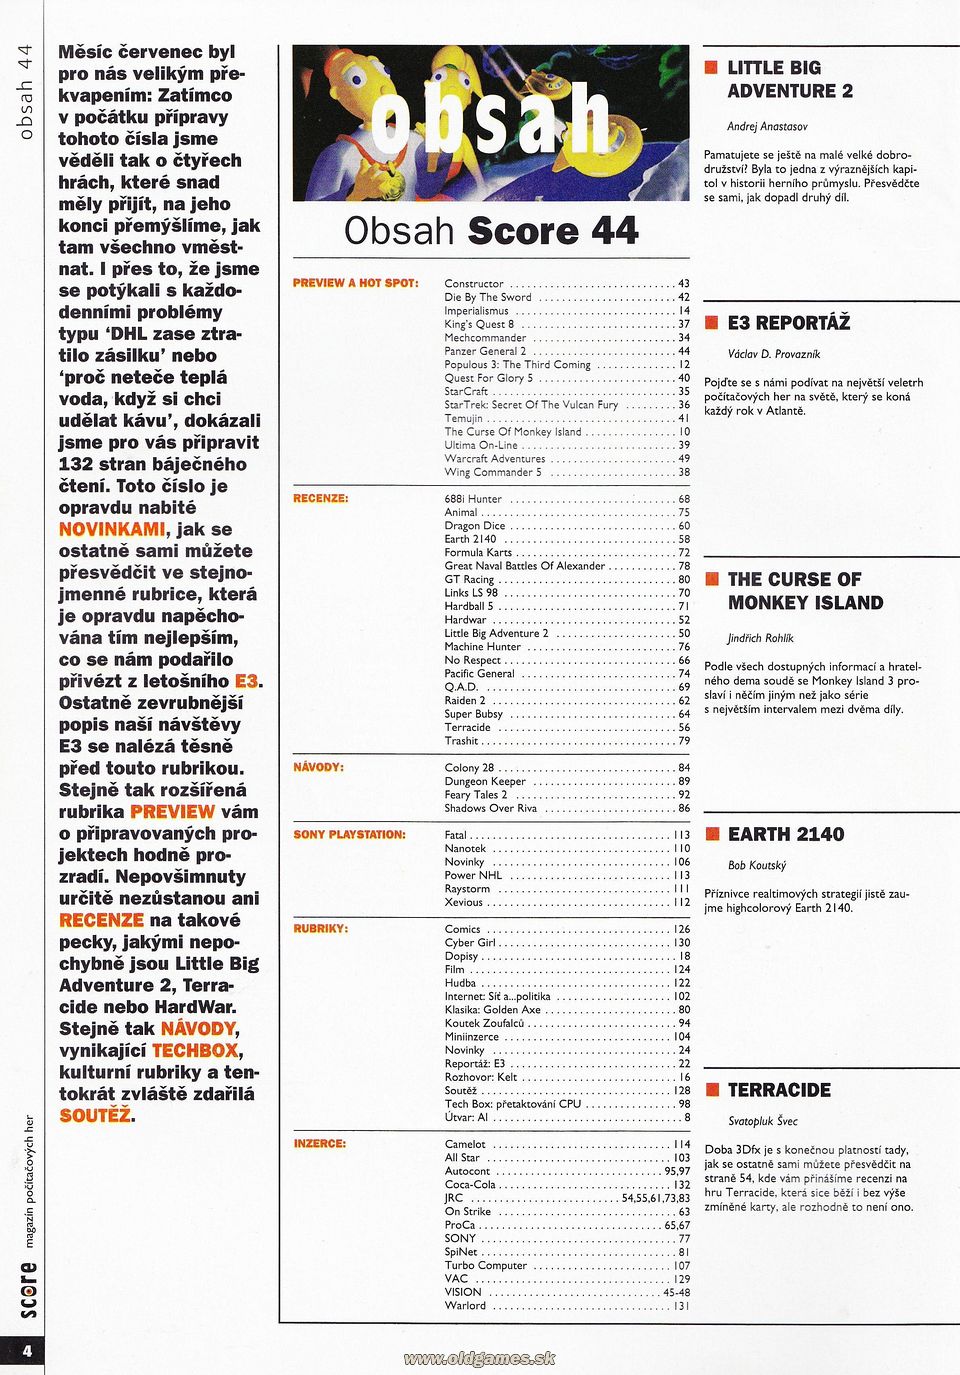 Obsah Score 44